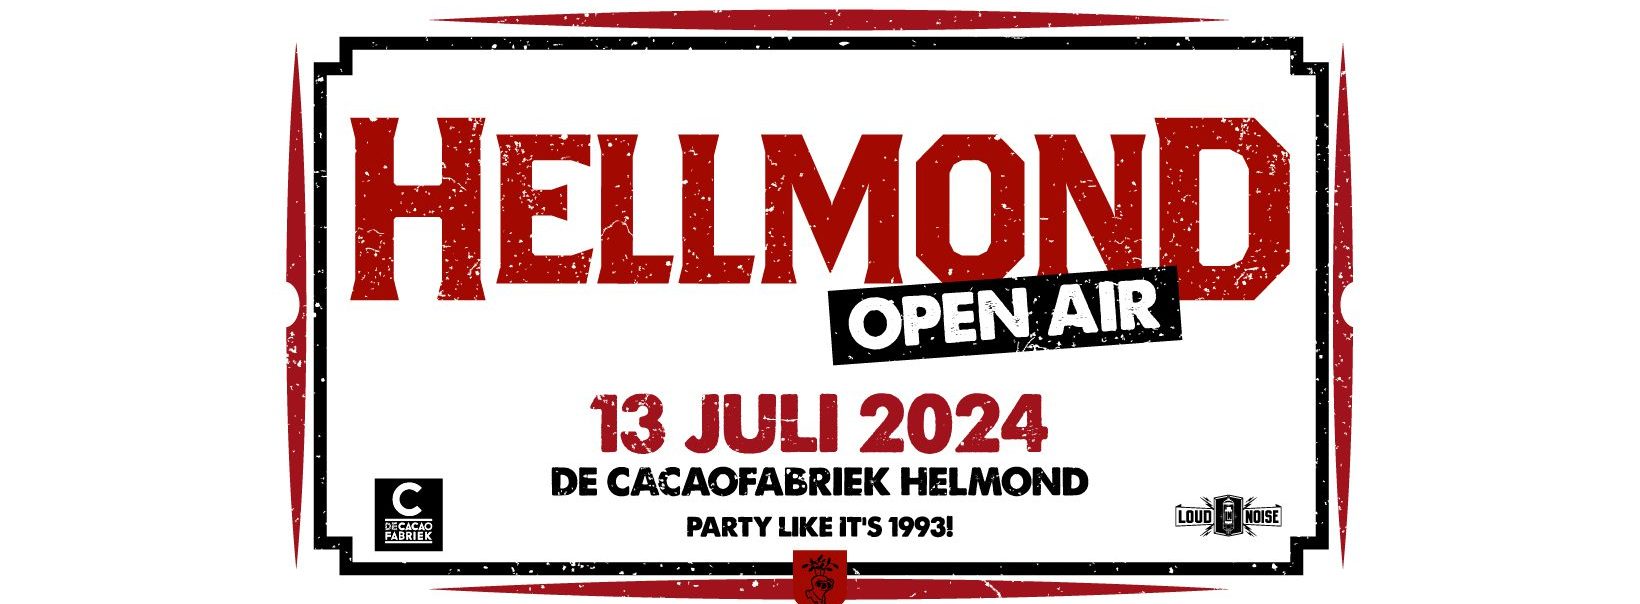 Hellmond Open Air 2024